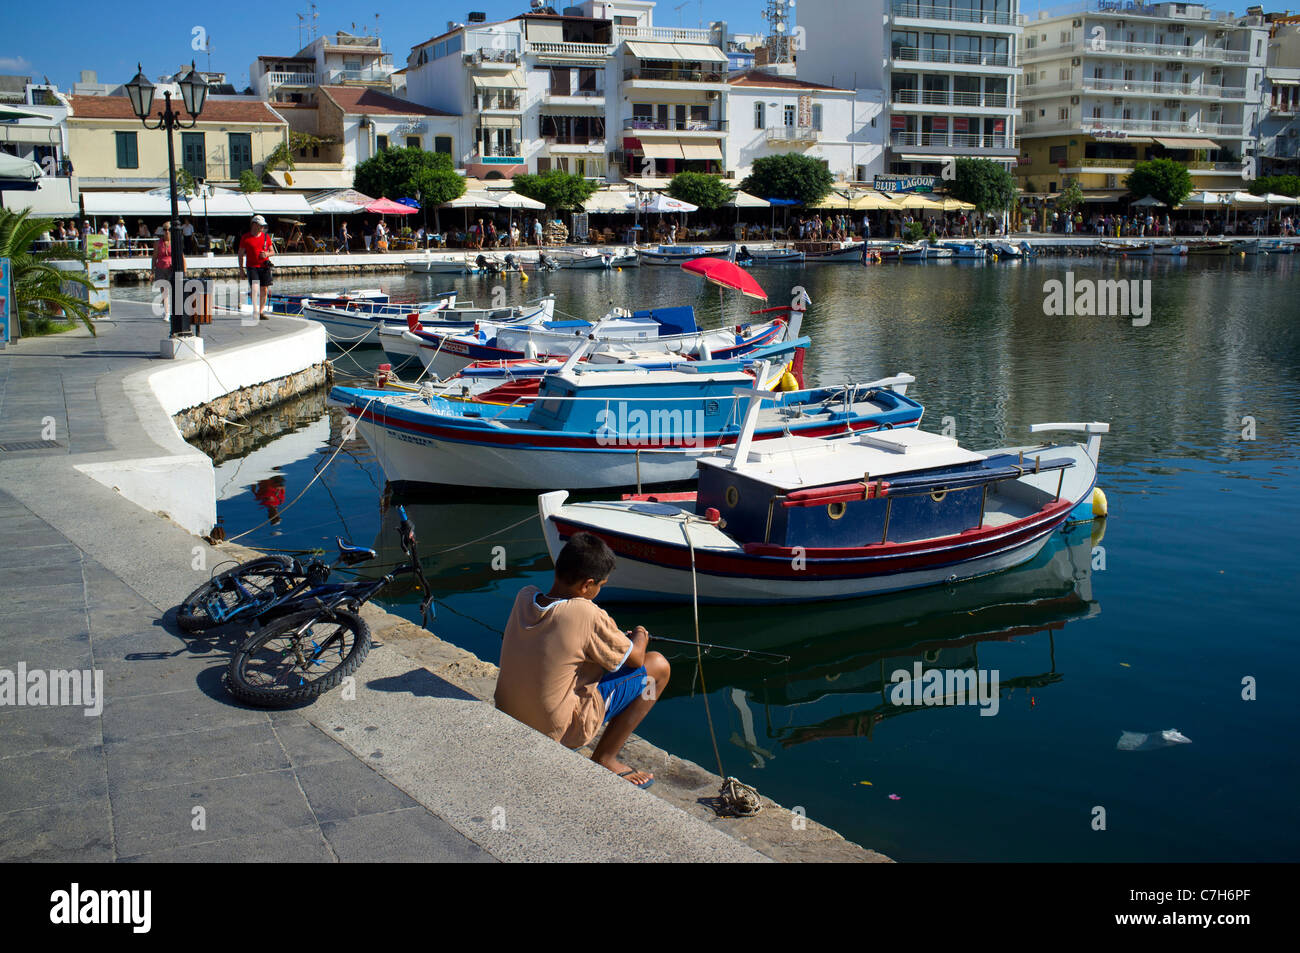 jungen Fahrrad Angeln See Überlieferung Kreta Griechenland Boot Hafen Hafen Restaurants Urlaub Ziel sonnigen Sommersonnenschein Fahrrad Stockfoto